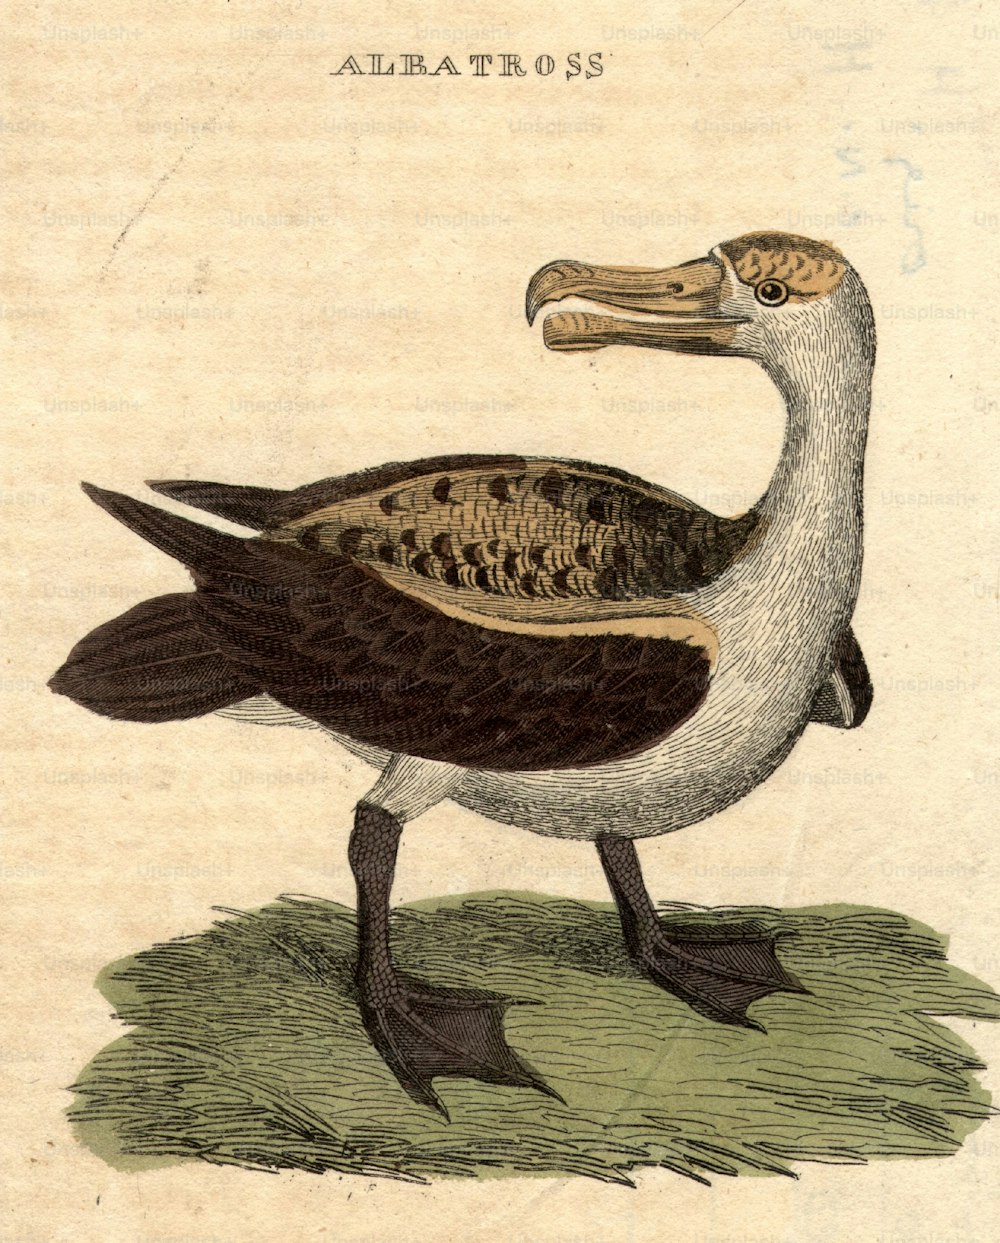 1800 circa: un albatro, un uccello marino dalle grandi ali in grado di compiere lunghi voli.  (Foto di Hulton Archive/Getty Images)